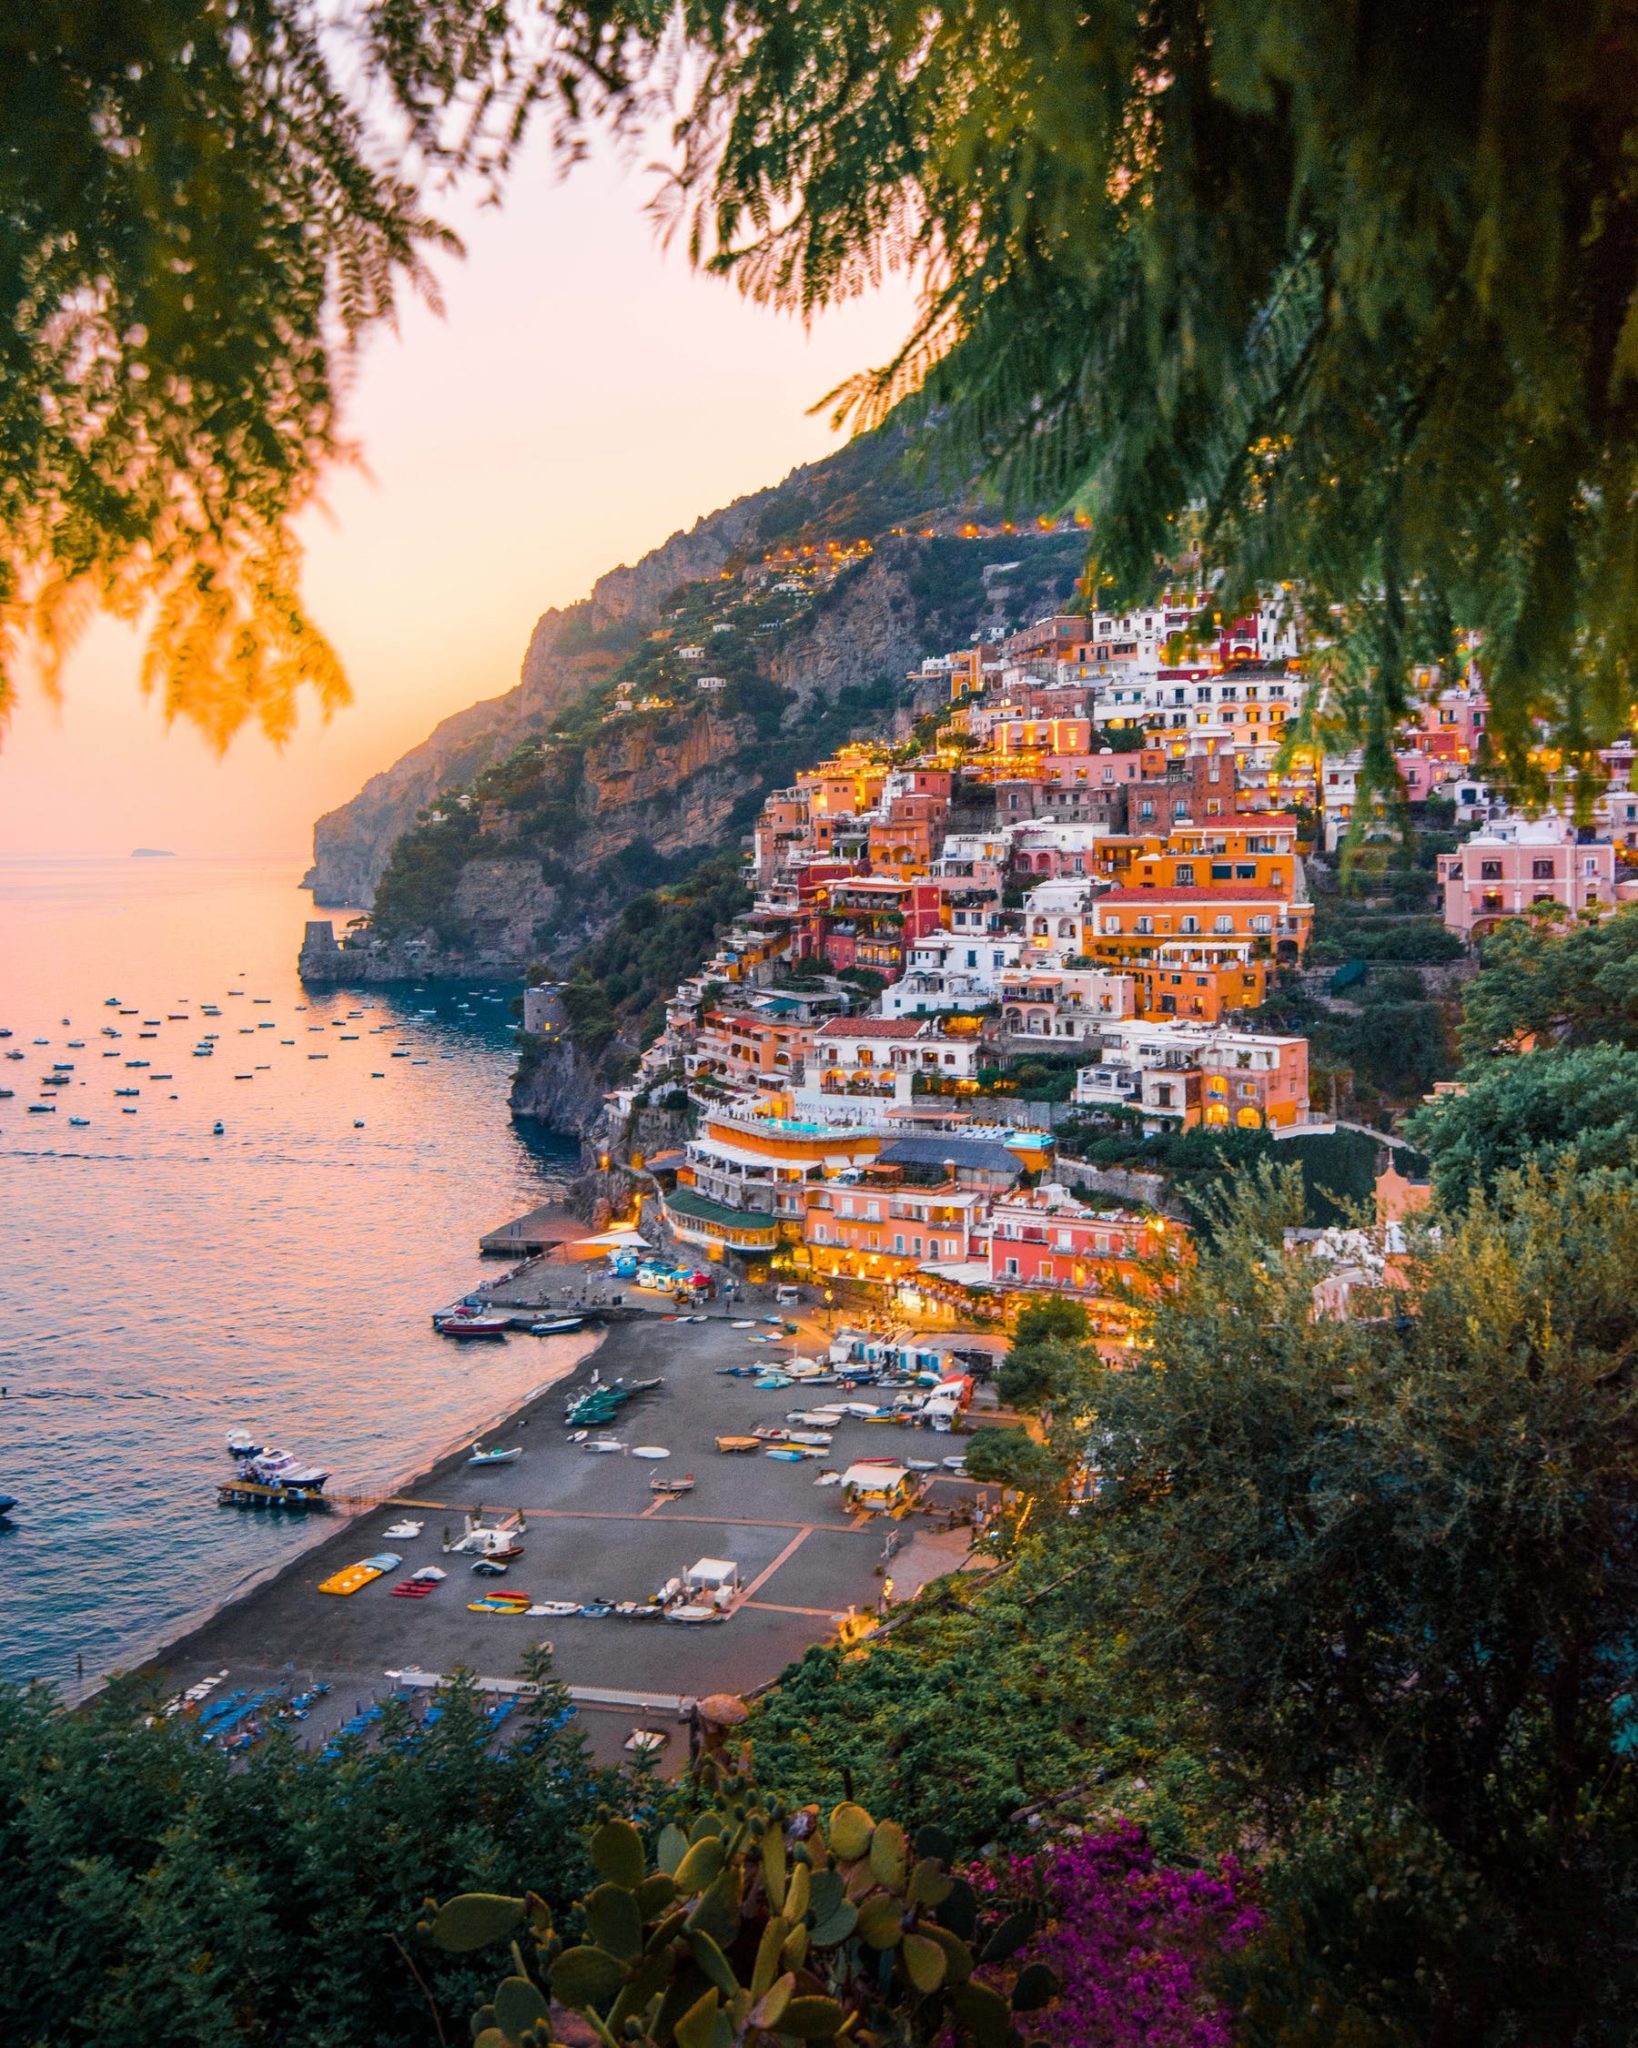 must visit amalfi coast